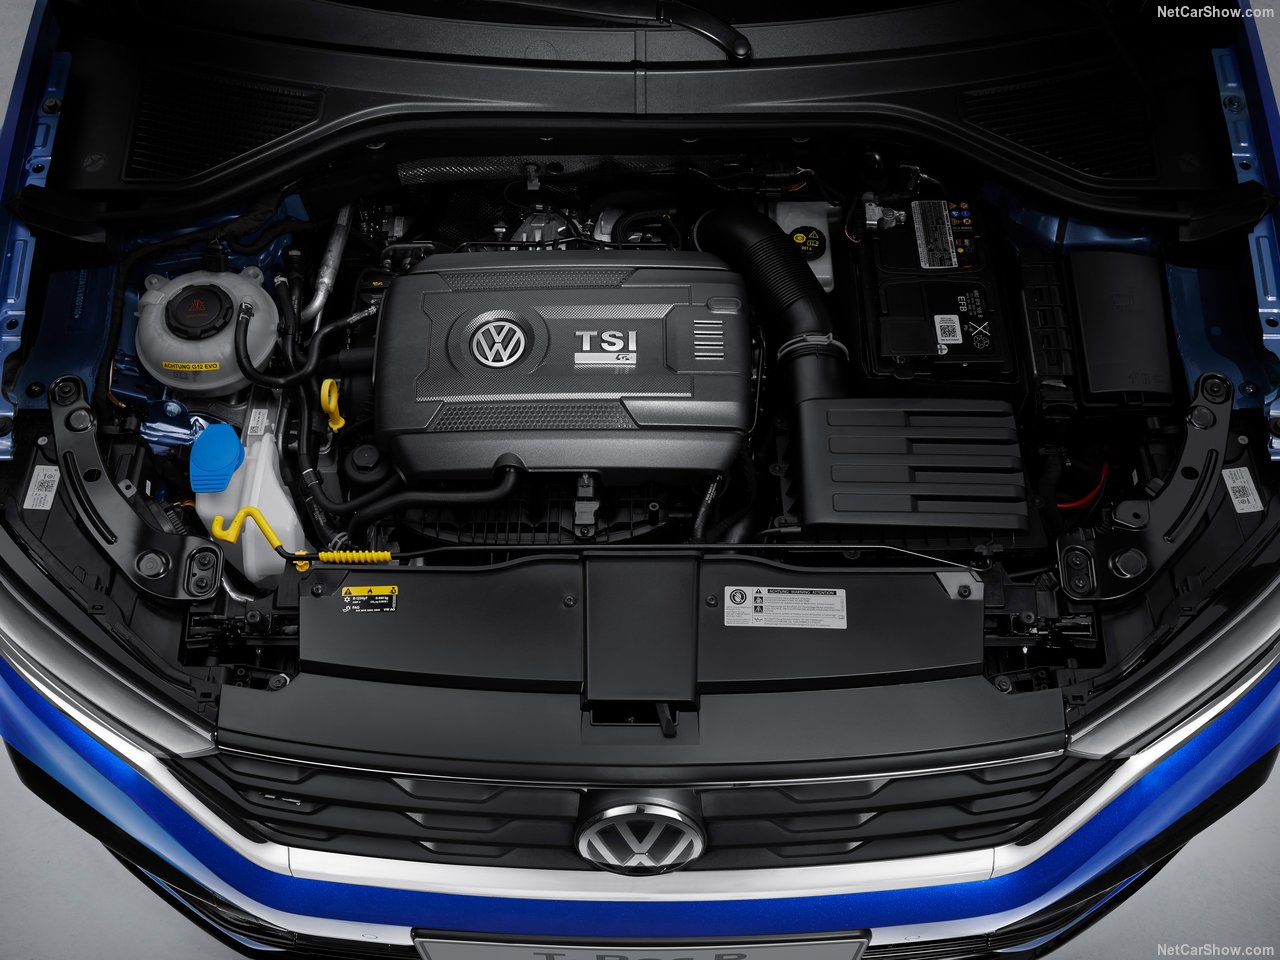 Volkswagen T-Roc R ortaya çıktı! 2019 Volkswagen T-Roc R’nin özellikleri neler?